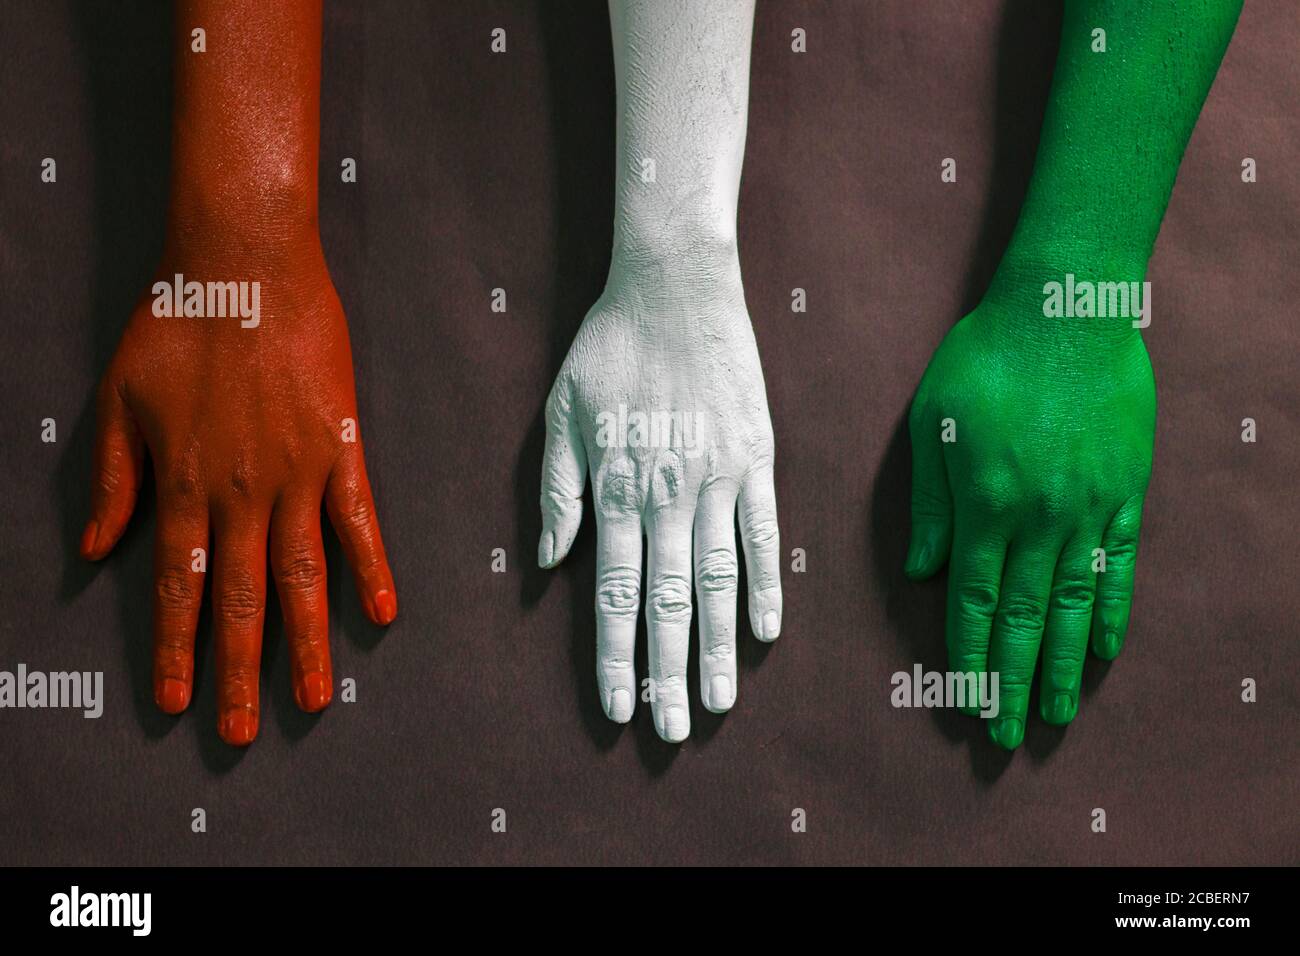 Drei Hände sind mit drei Farben bemalt, Safran, weiß und grün, um tricolor indische Nationalflagge darzustellen.15 August Unabhängigkeitstag Indien. Stockfoto